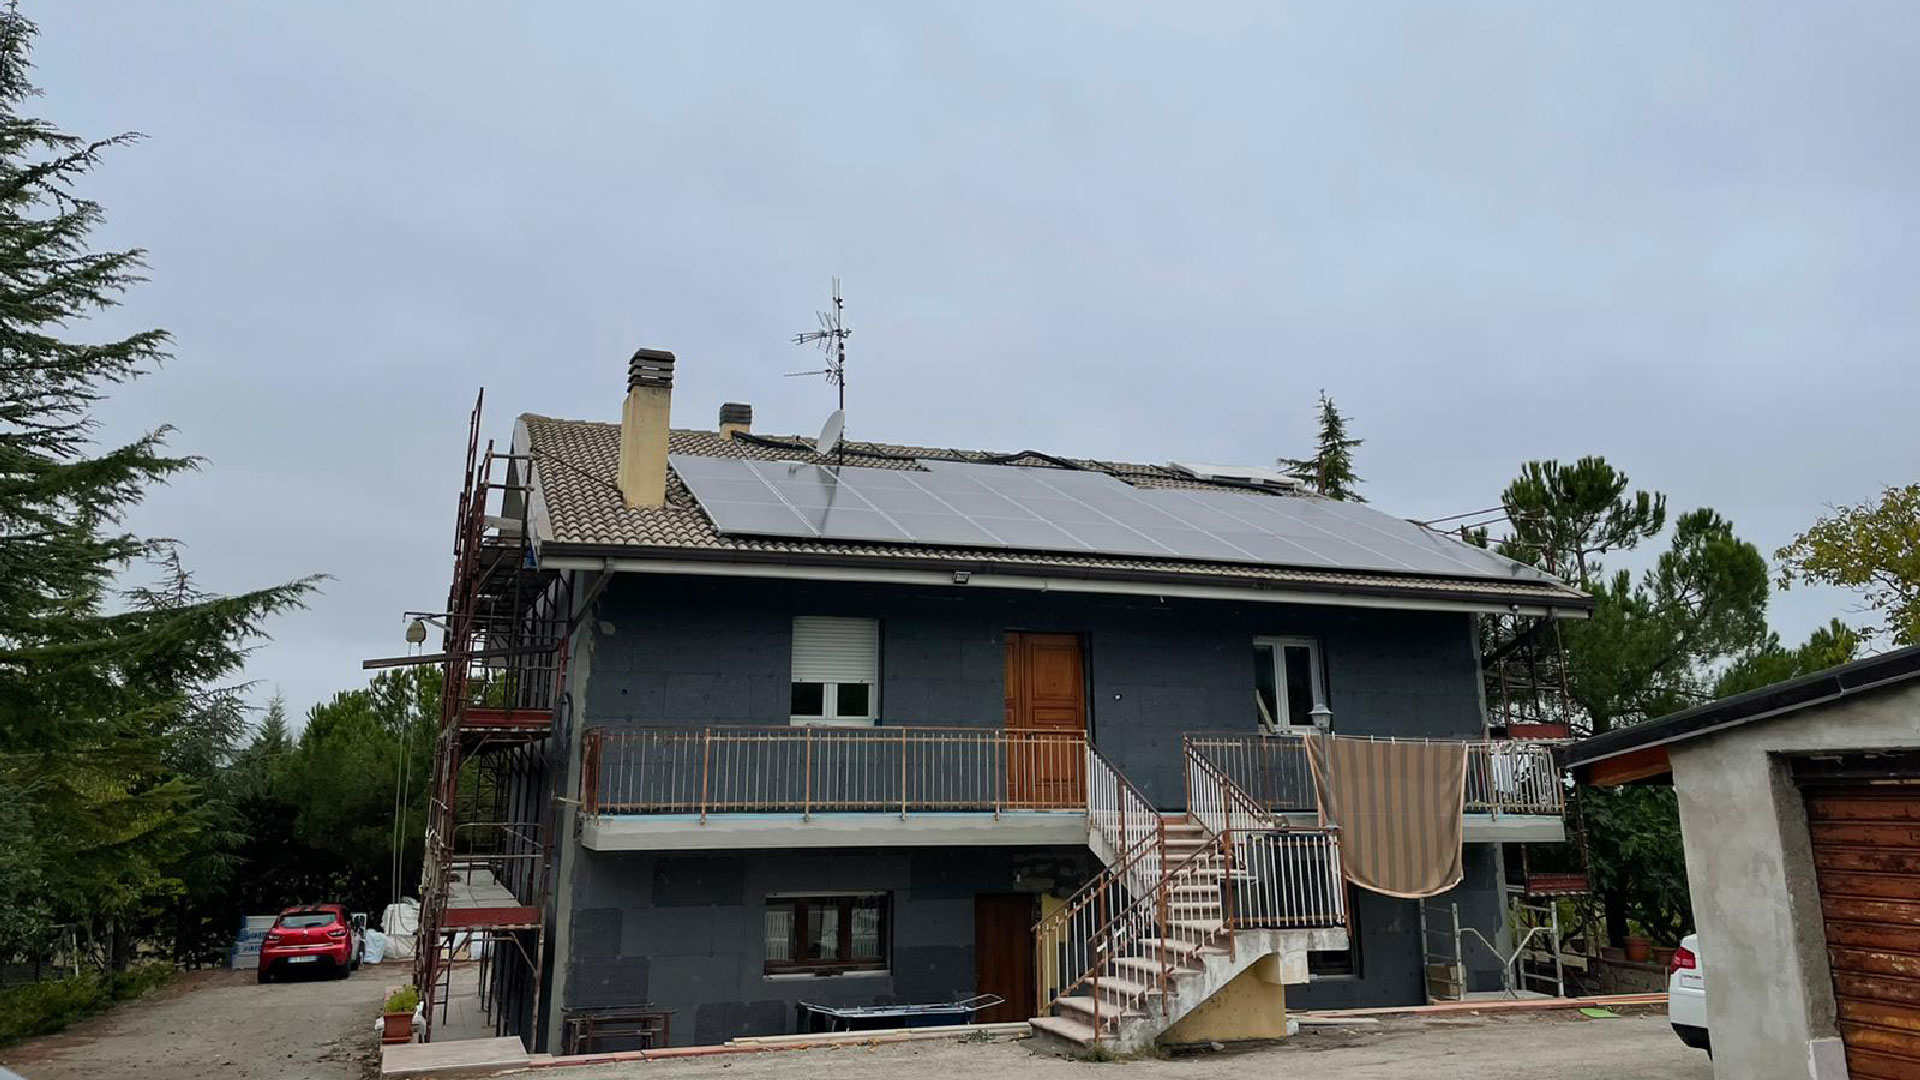 Casa Pace - Efficientamento energetico - Ecoclima